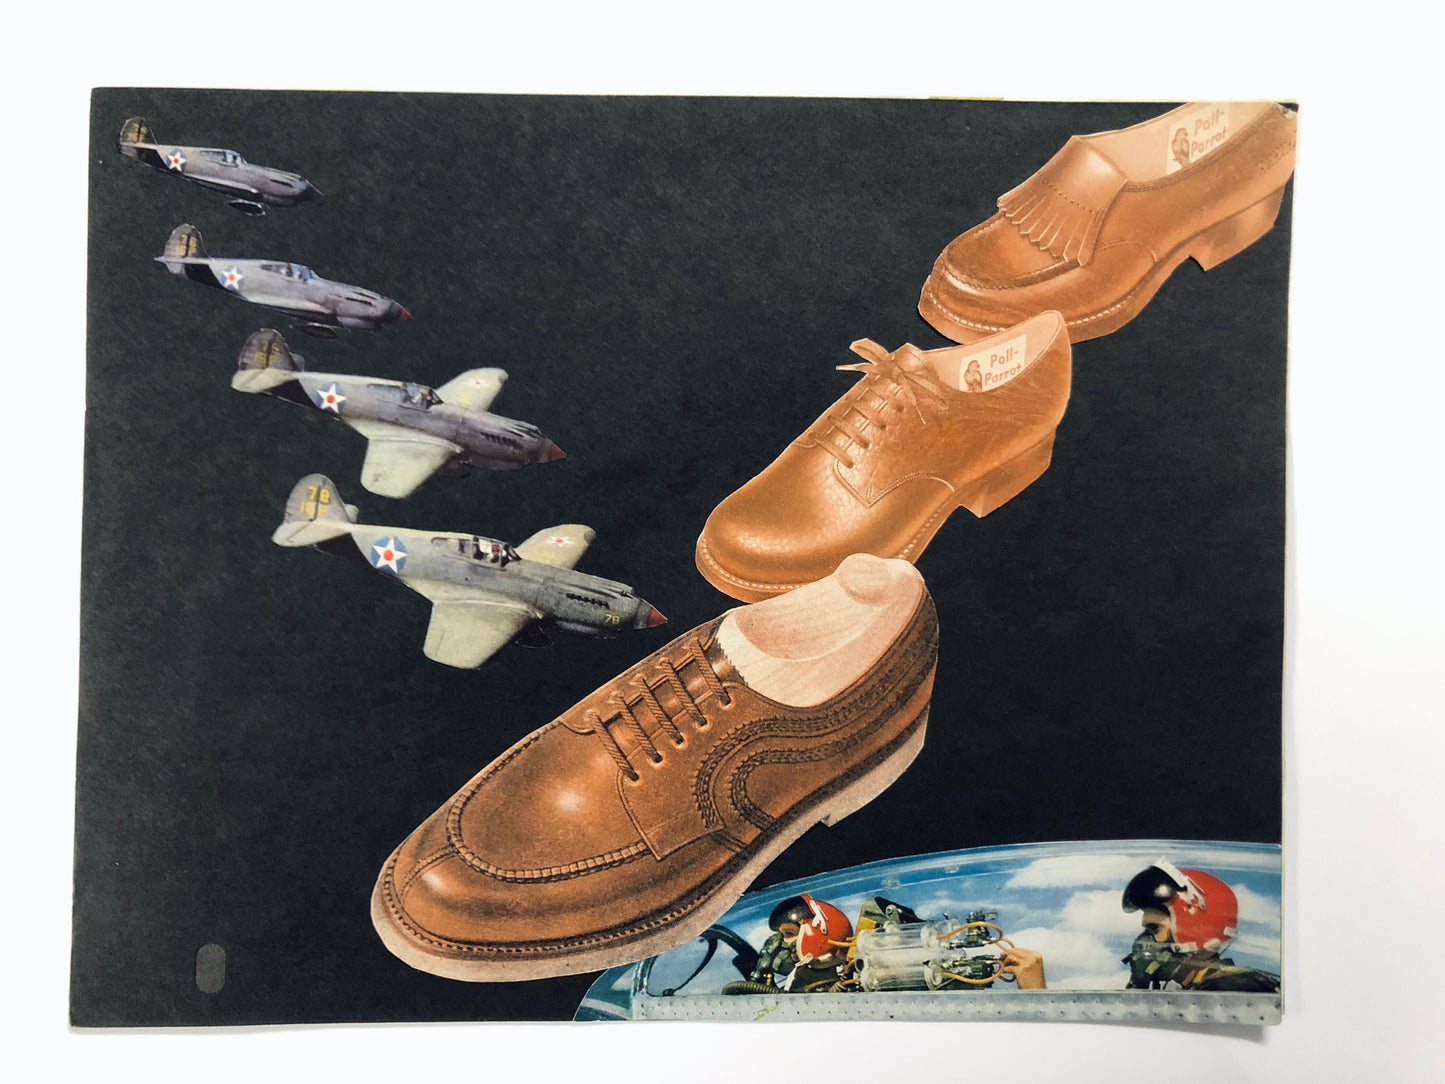 Winston Smith "Shoe Attack" (1976-77)